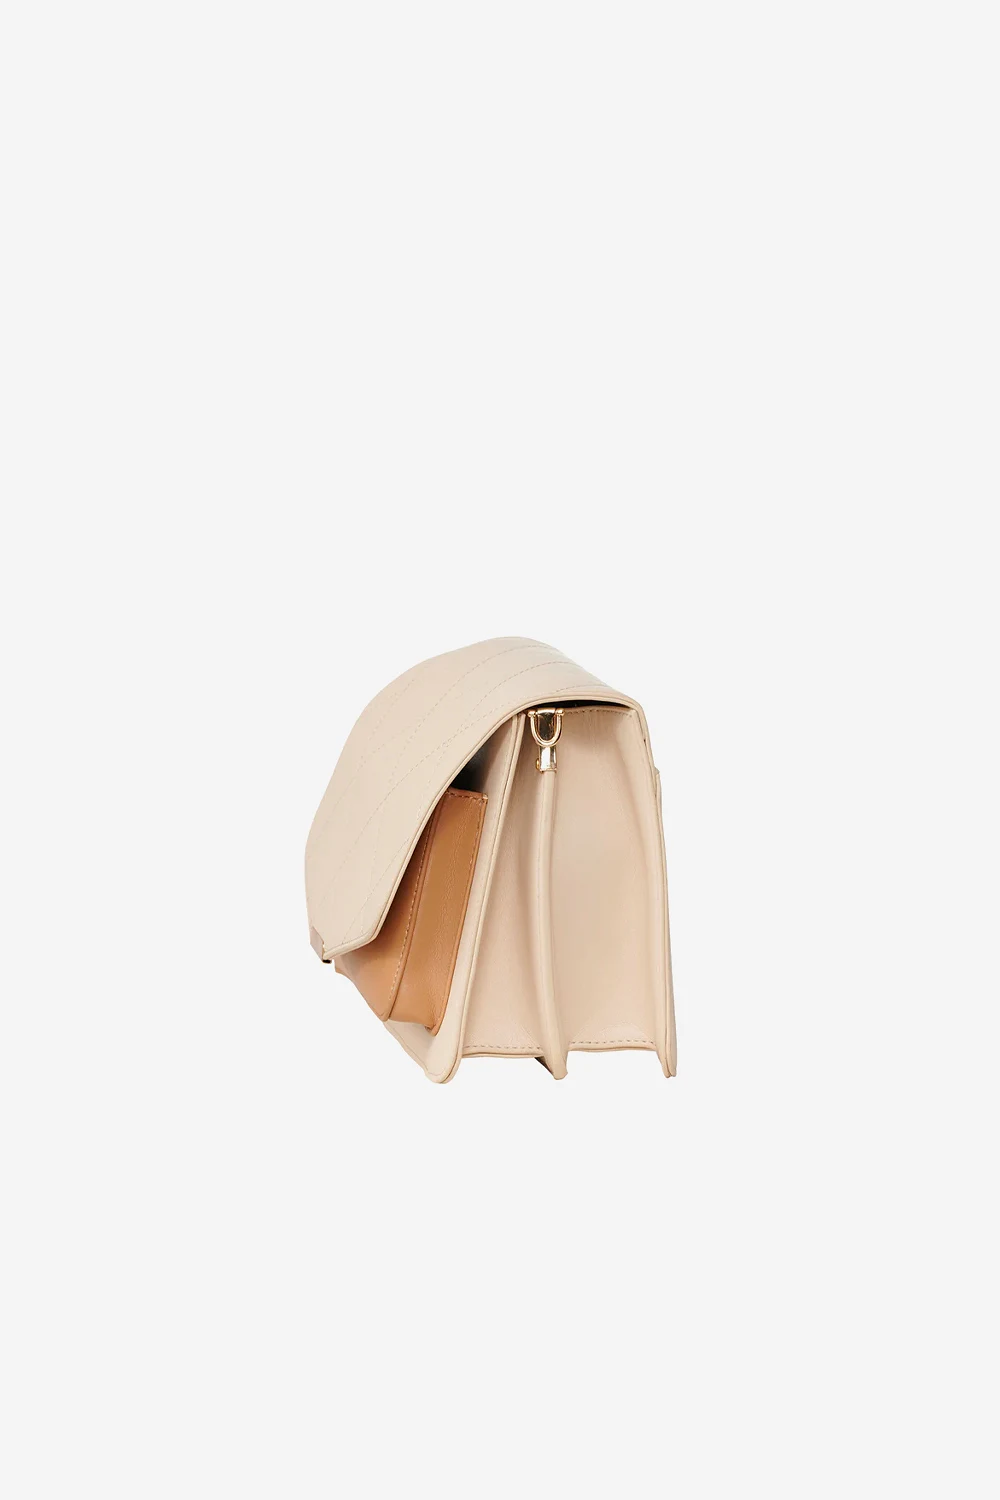 Blanca Bag Medium - Nude Leather Look